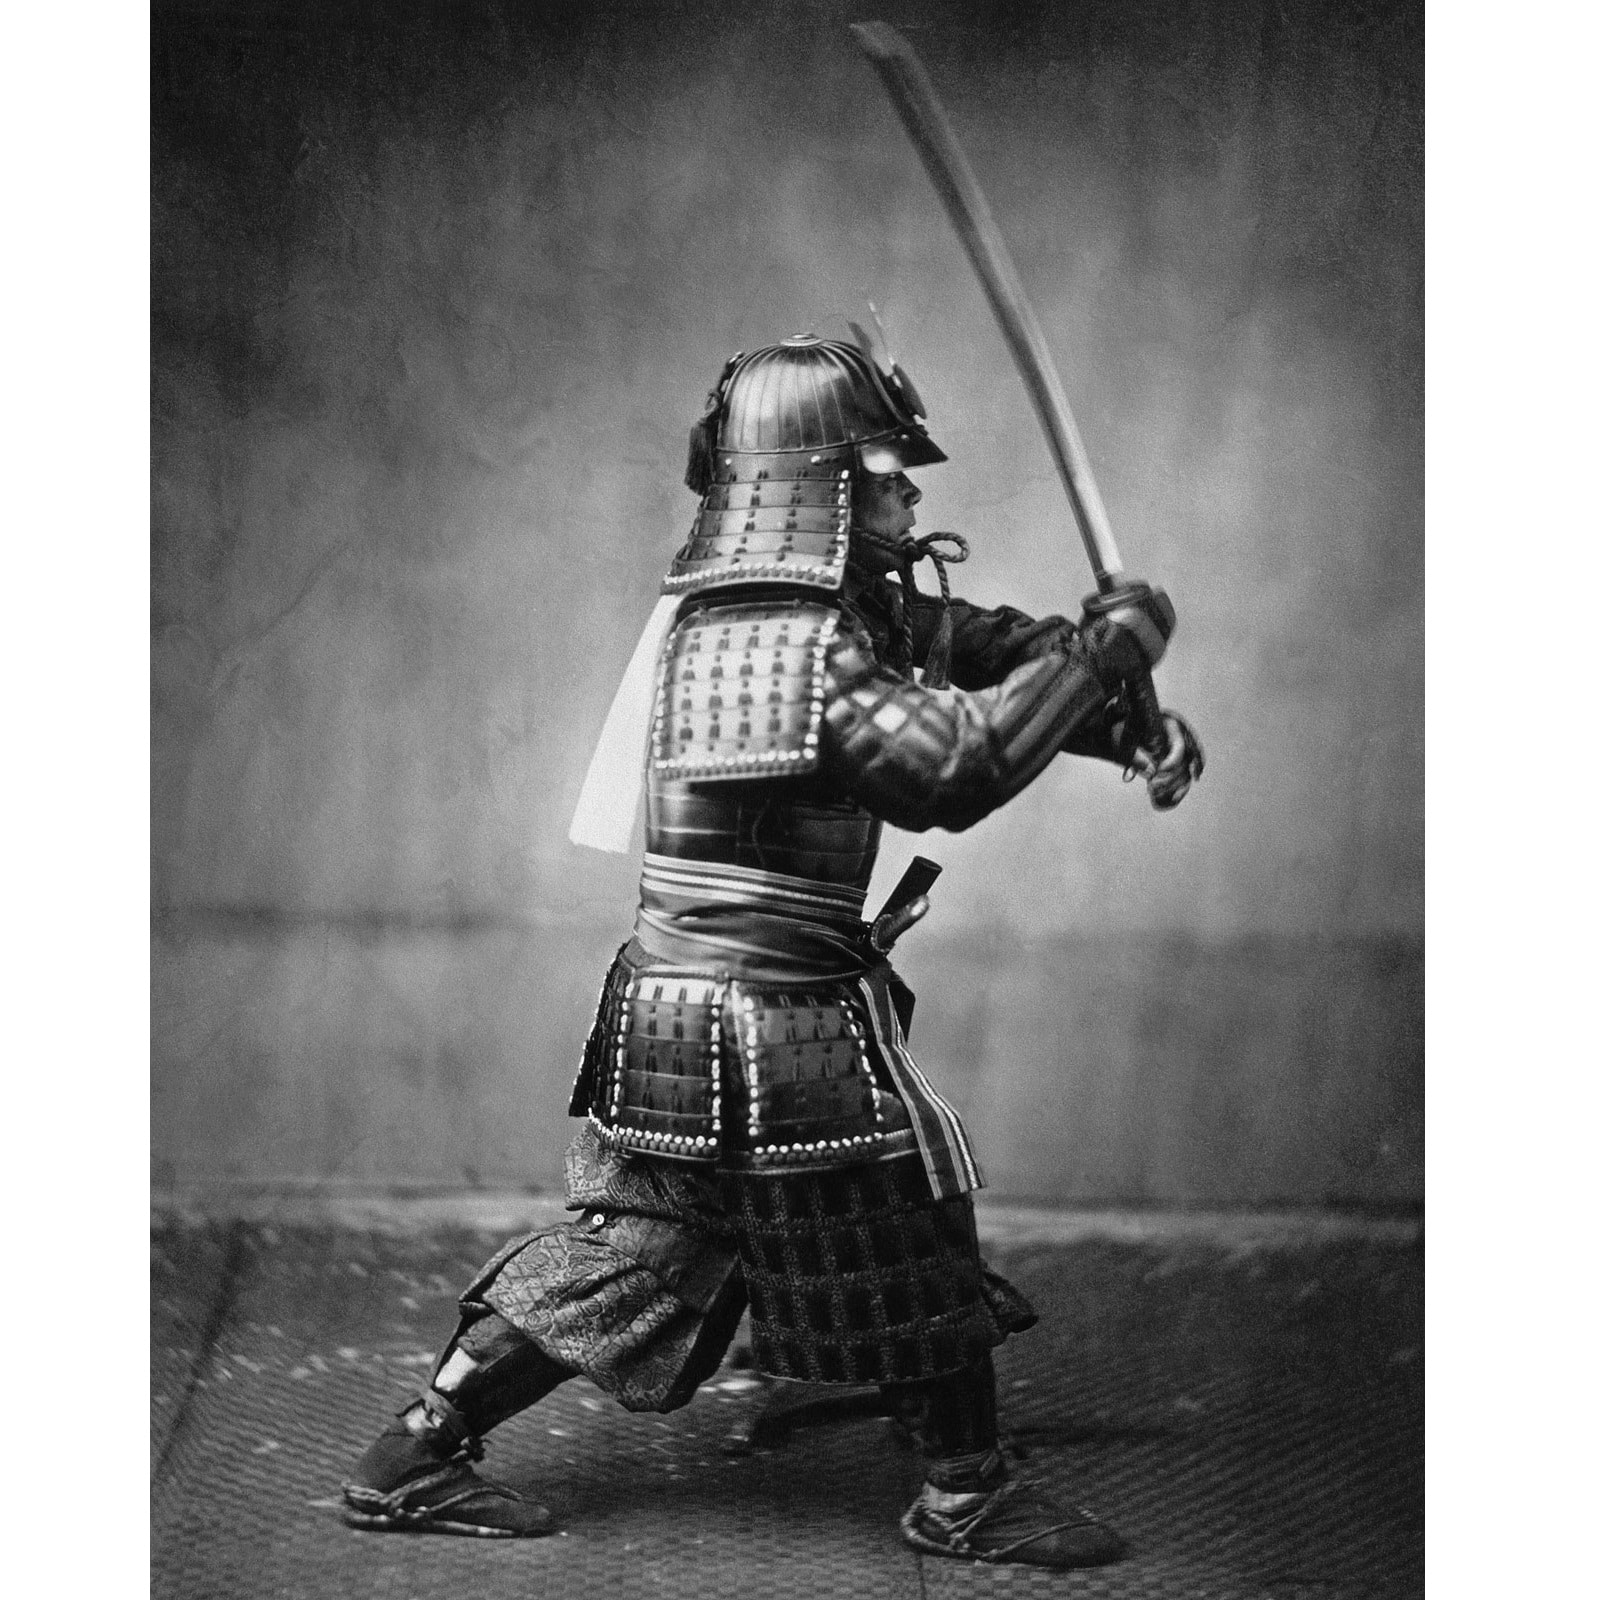 A Samurai with a sword